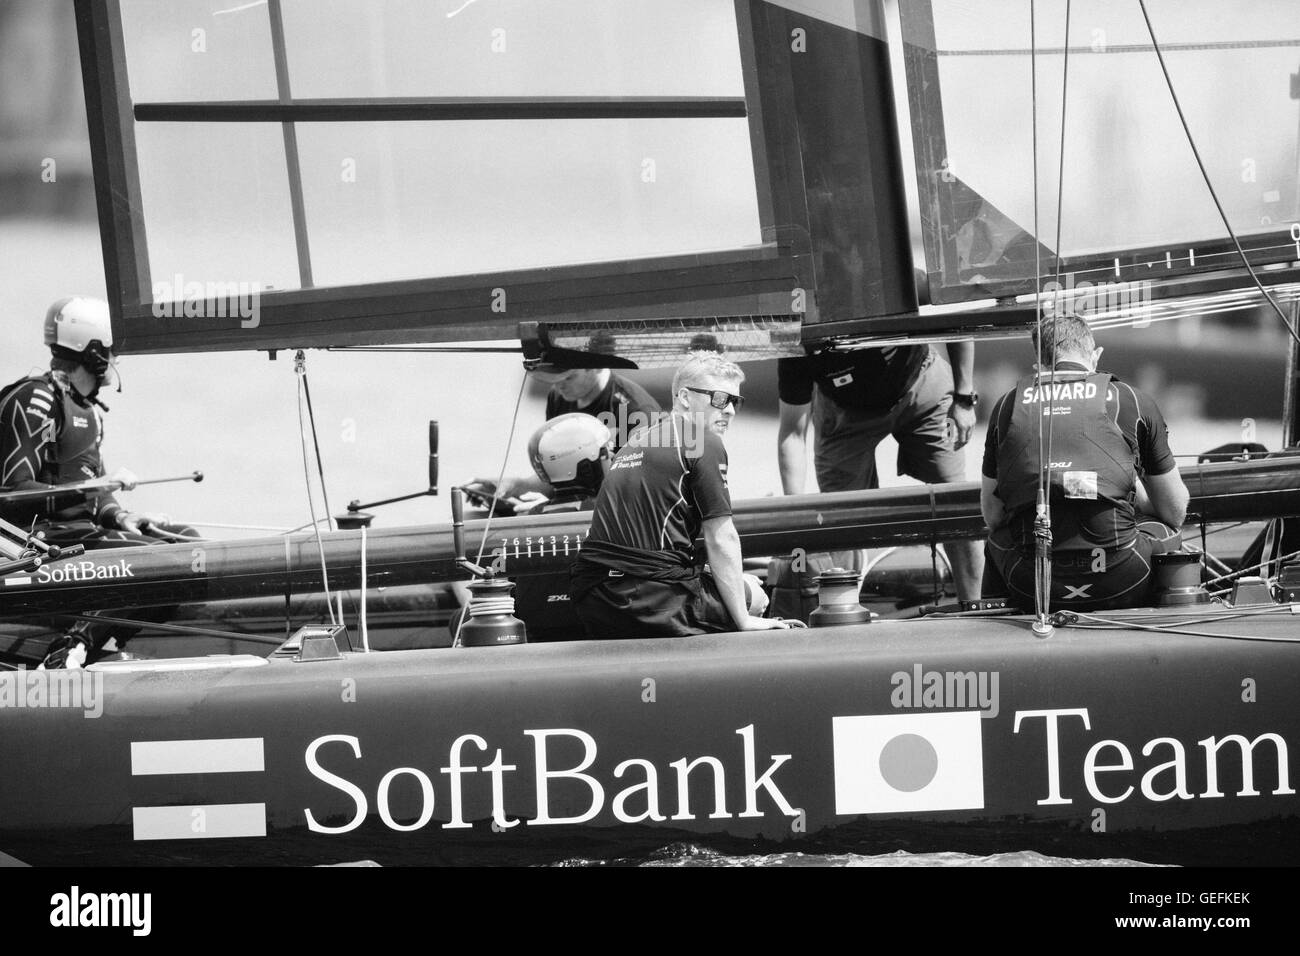 PORTSMOUTH, Royaume-Uni : 22 juillet, 2016 L'équipe de SoftBank, le 1er jour de course au cours de l'America's Cup World Series à Portsmouth. Banque D'Images